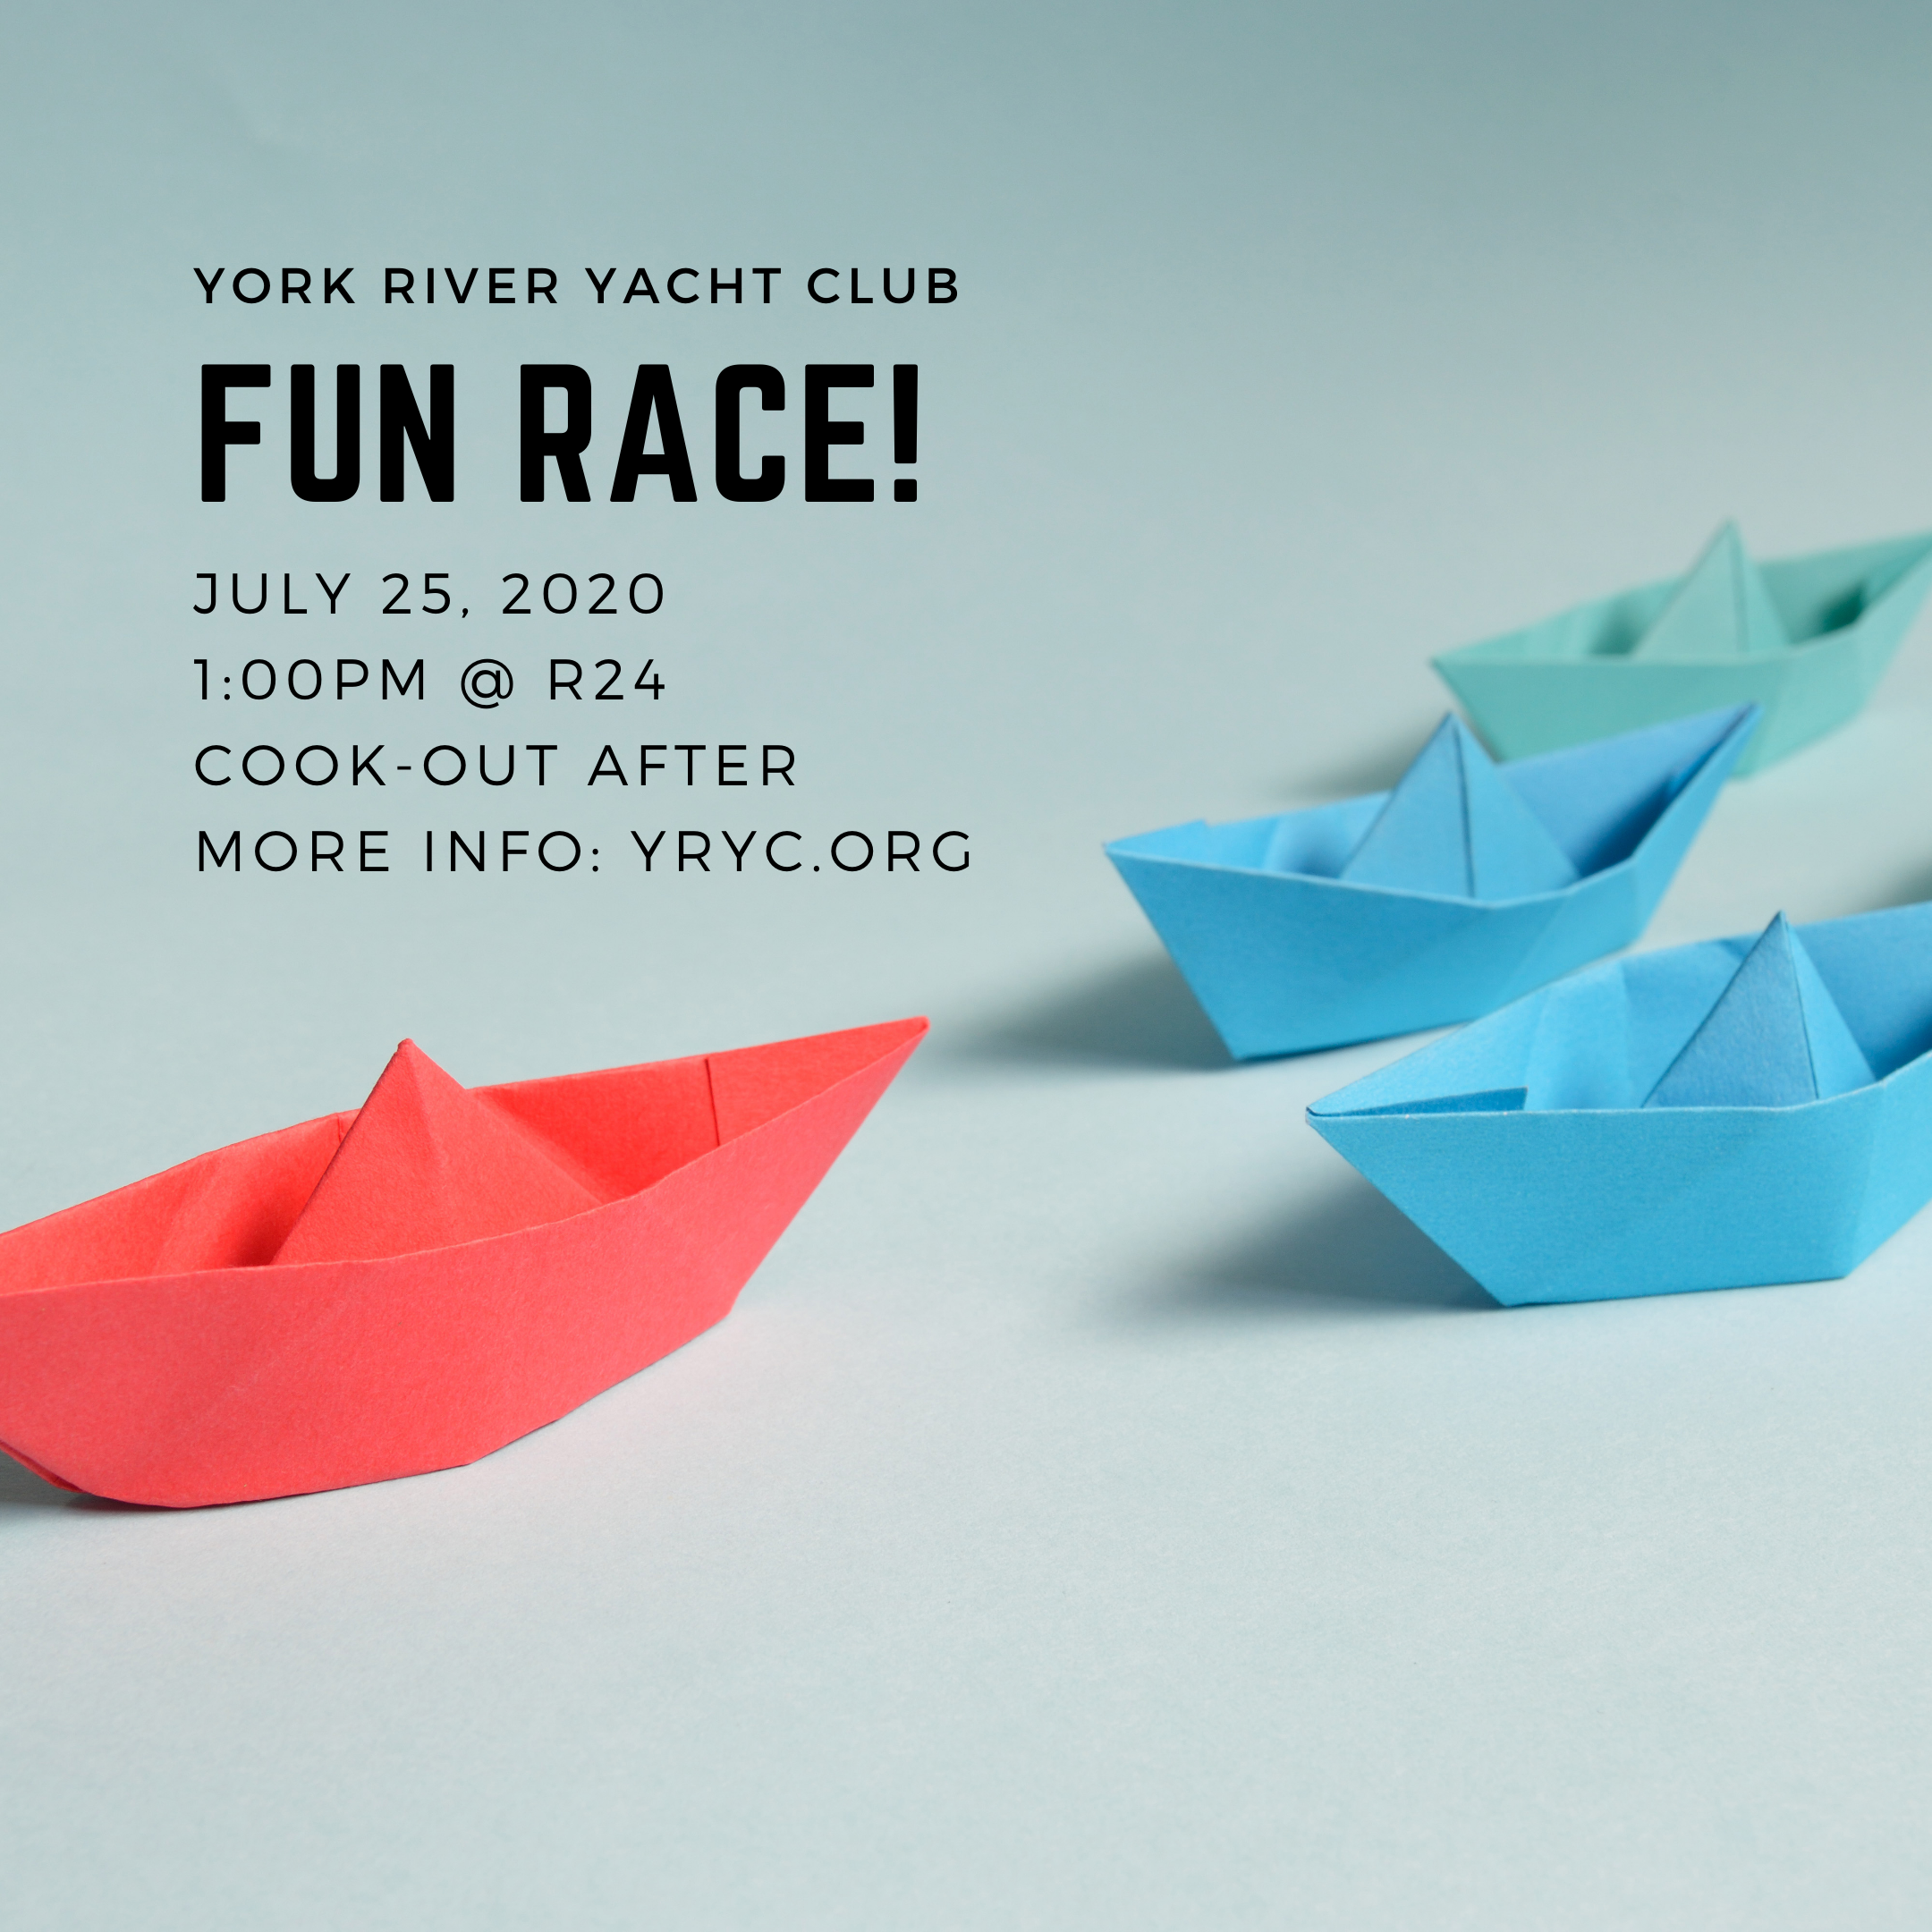 Fun Race